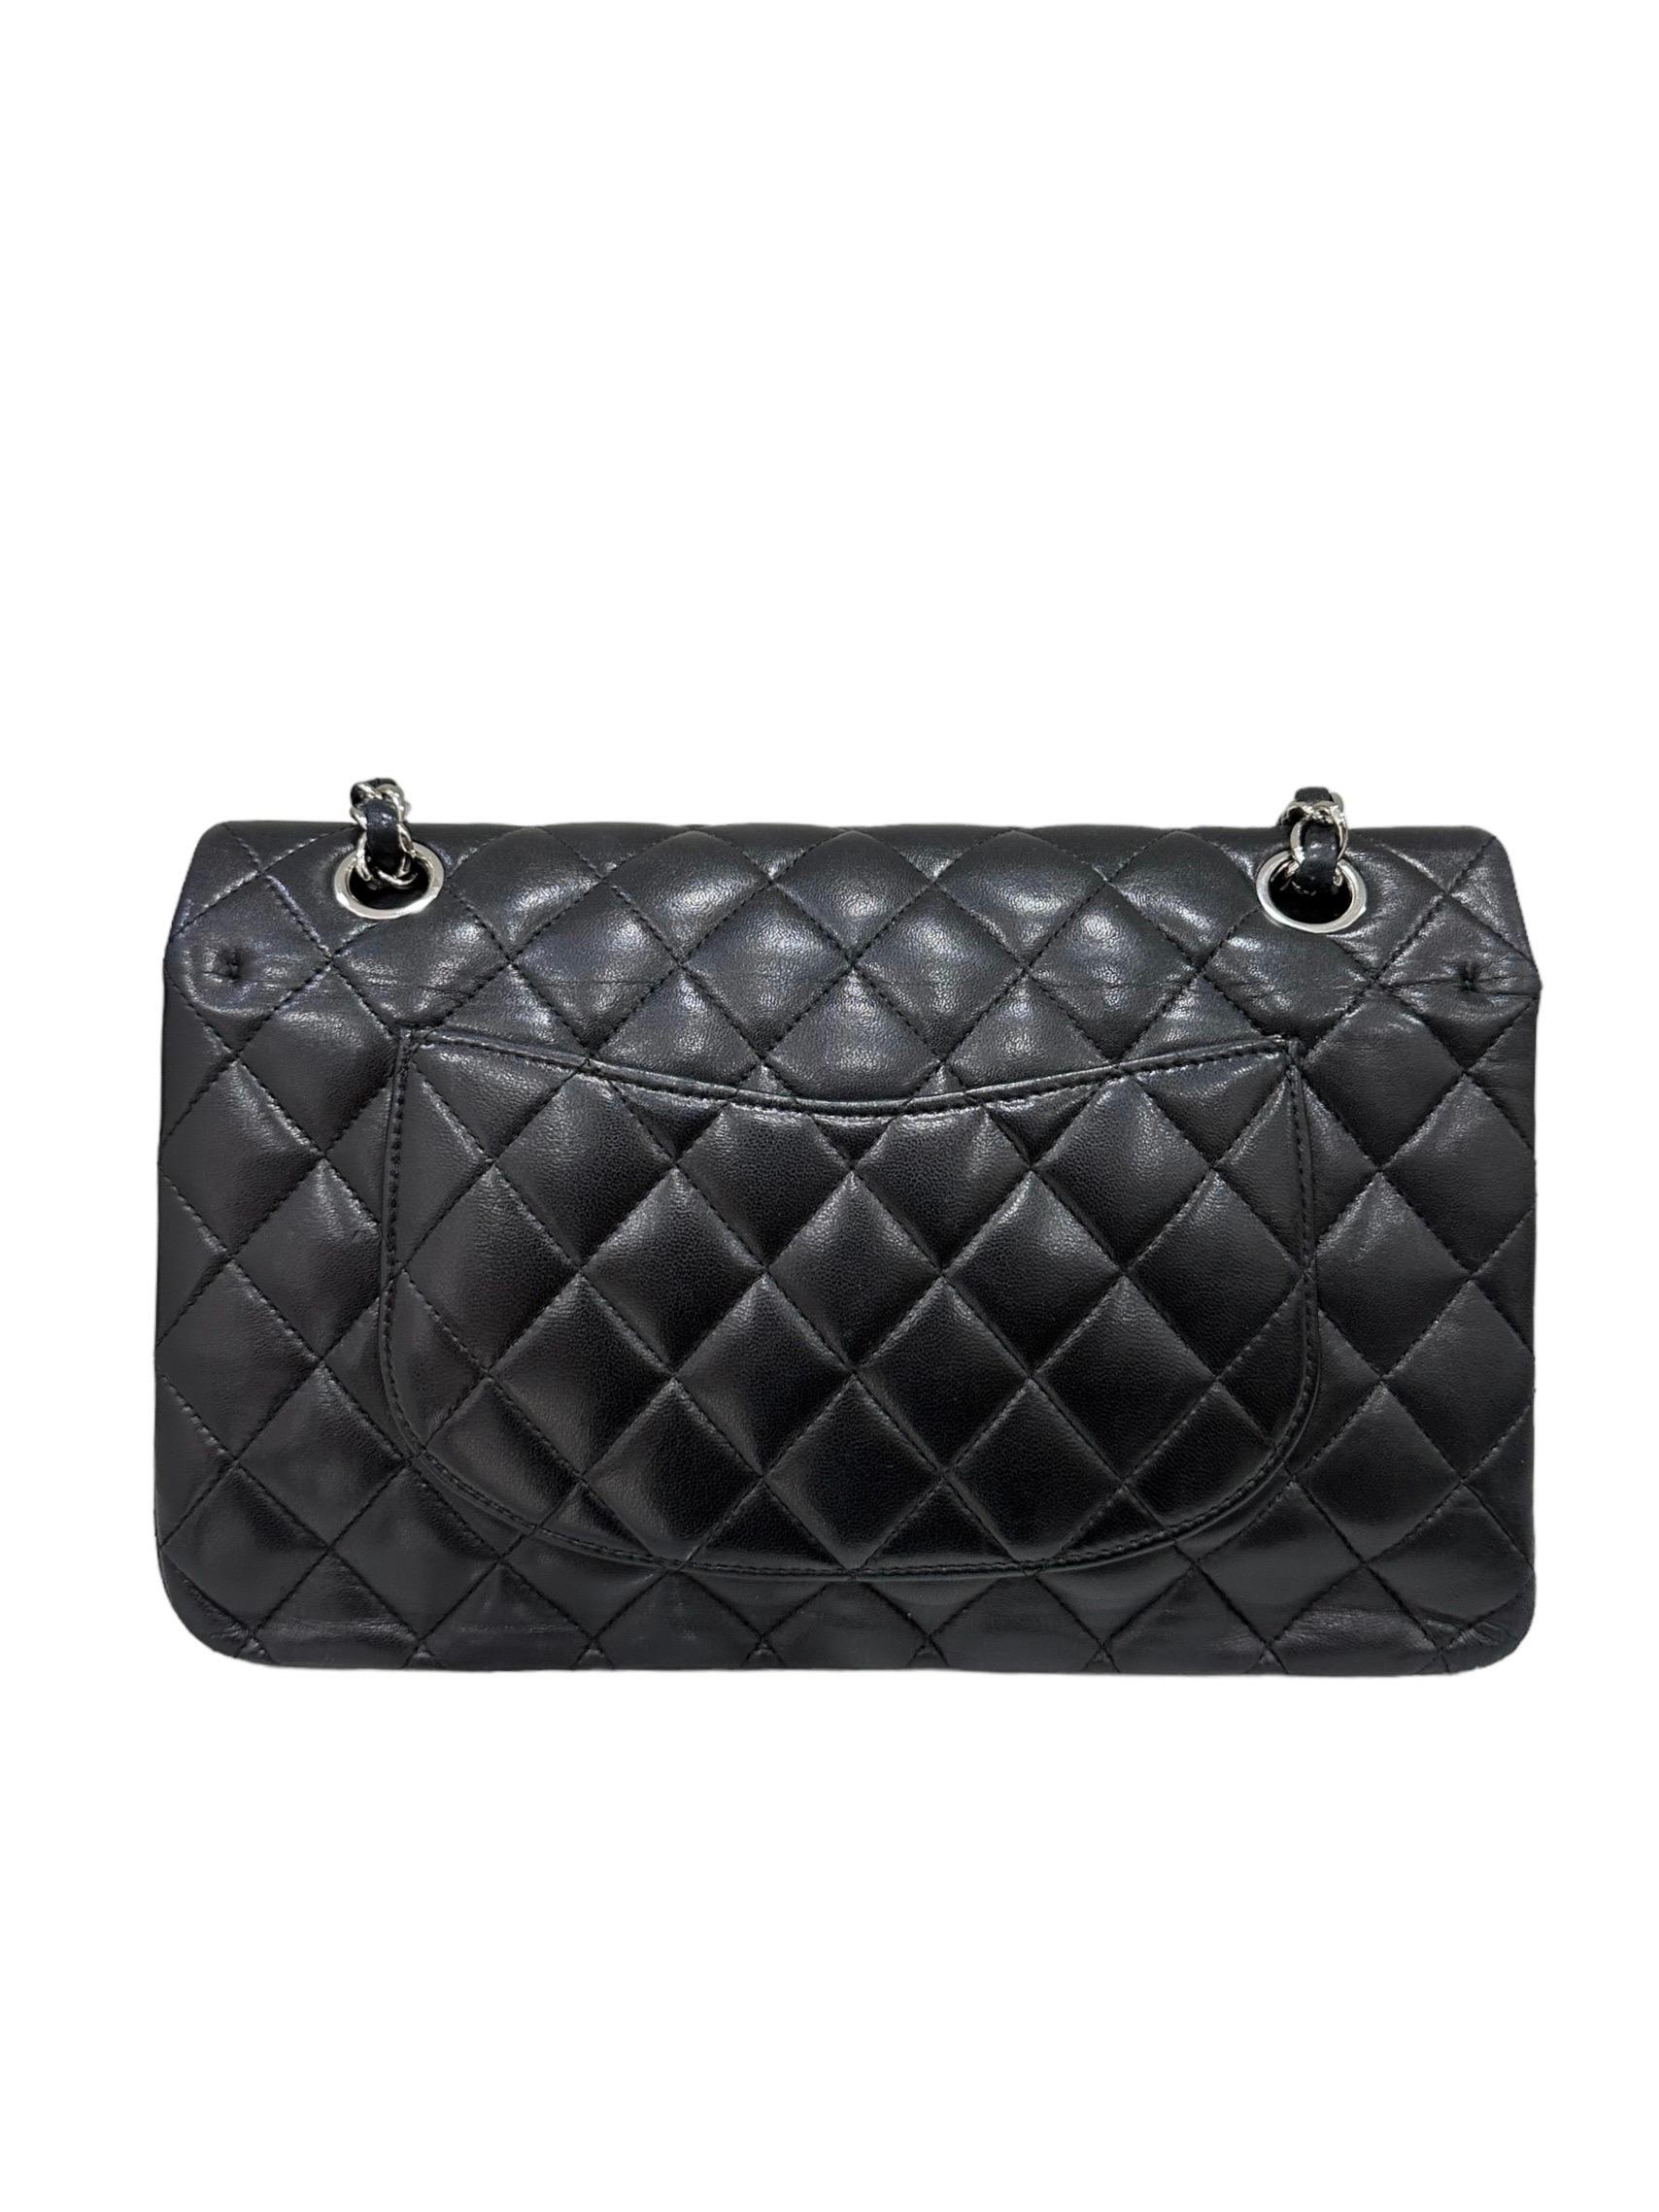 2008 Chanel. 2.55 Timeless Black Leather Shoulder Bag 3